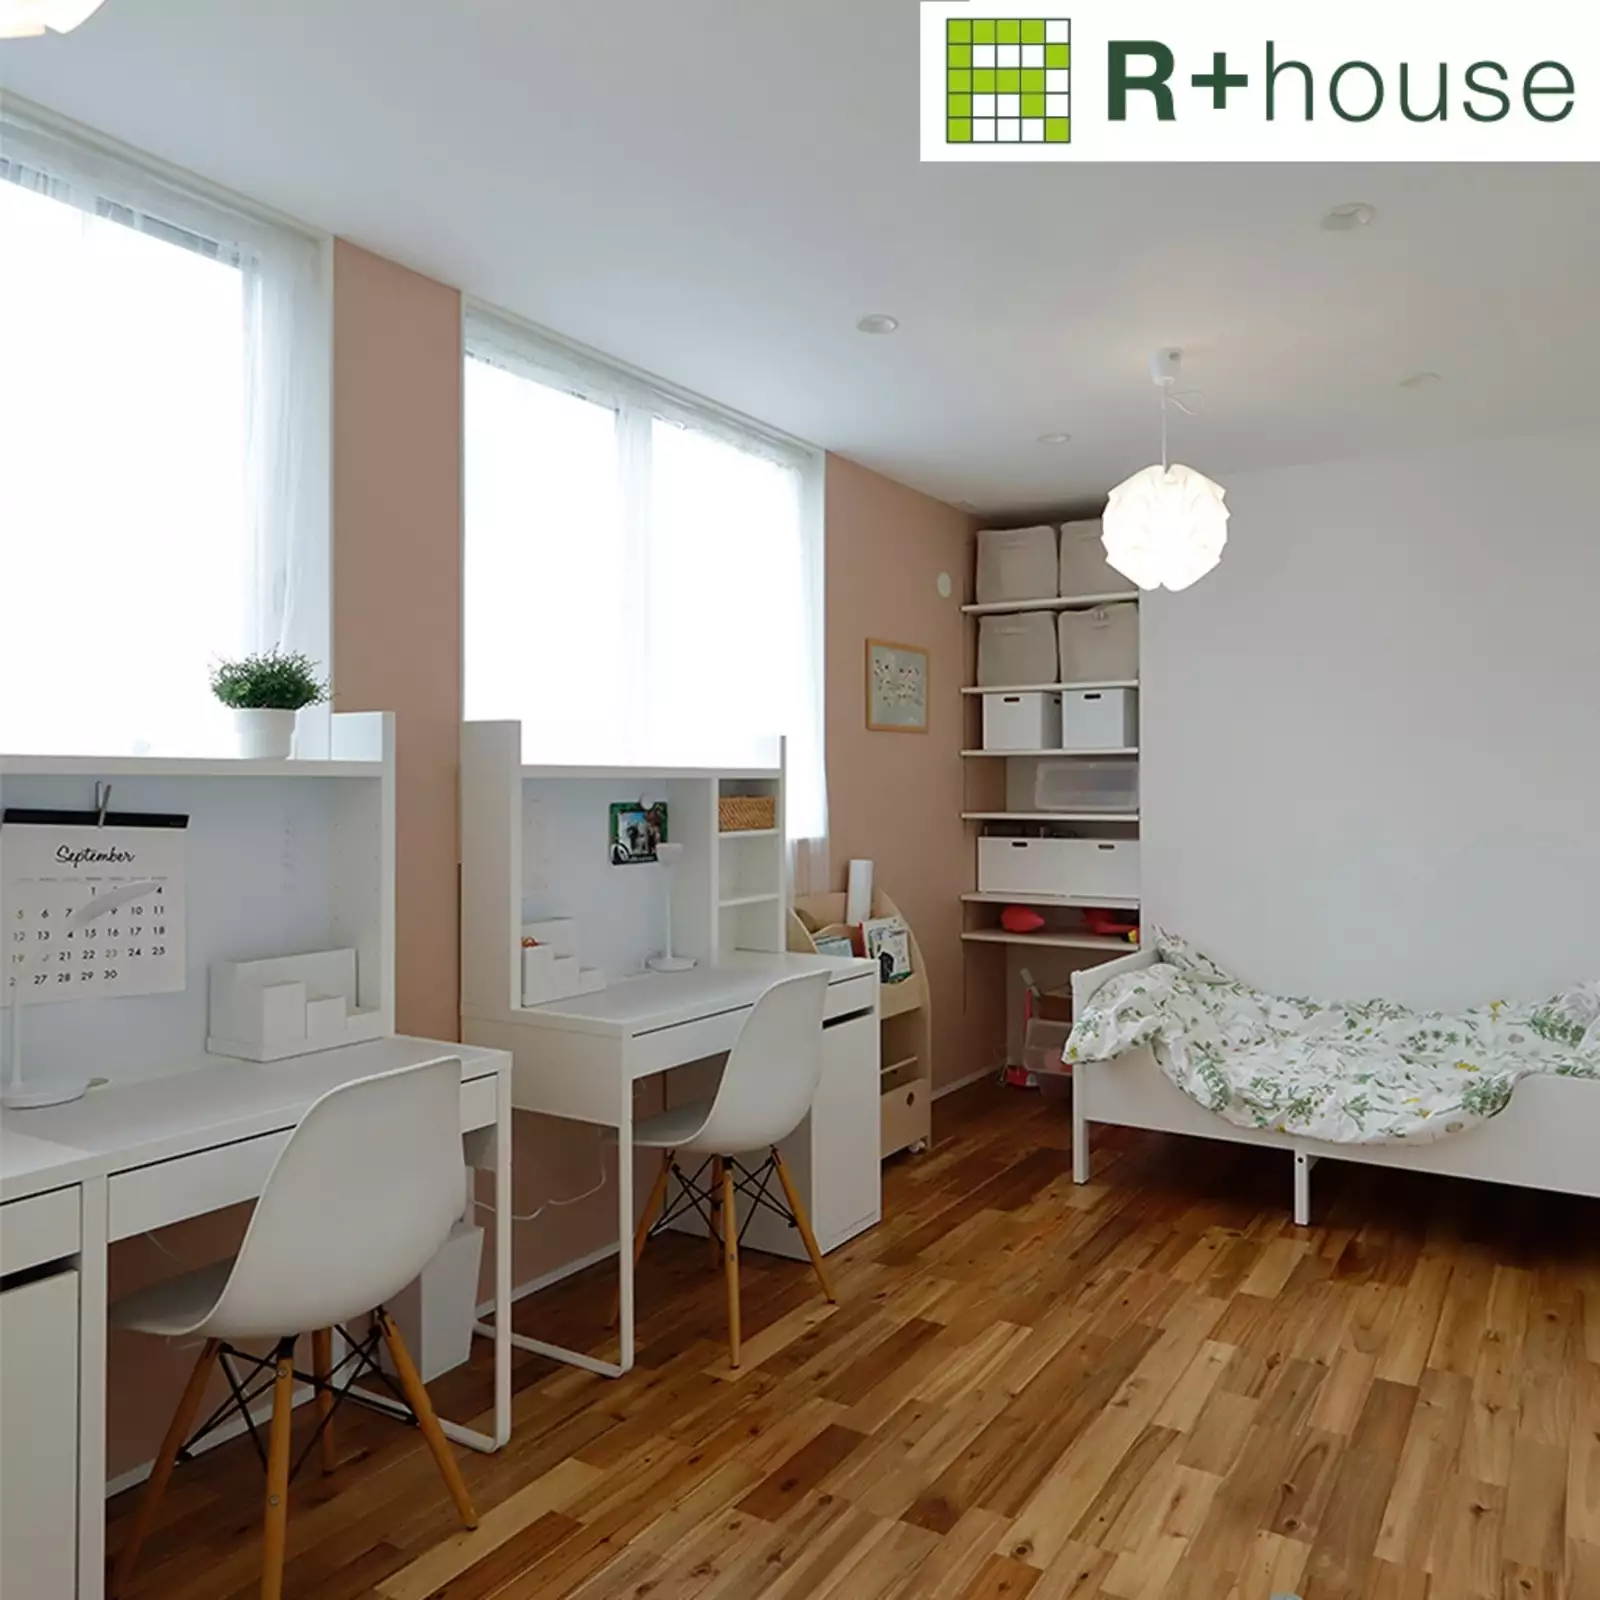 R+houseの物件の子ども室の写真です。成長して仕切れるように窓とドアは二つ。白で合わせたシンメトリーの家具も配置。